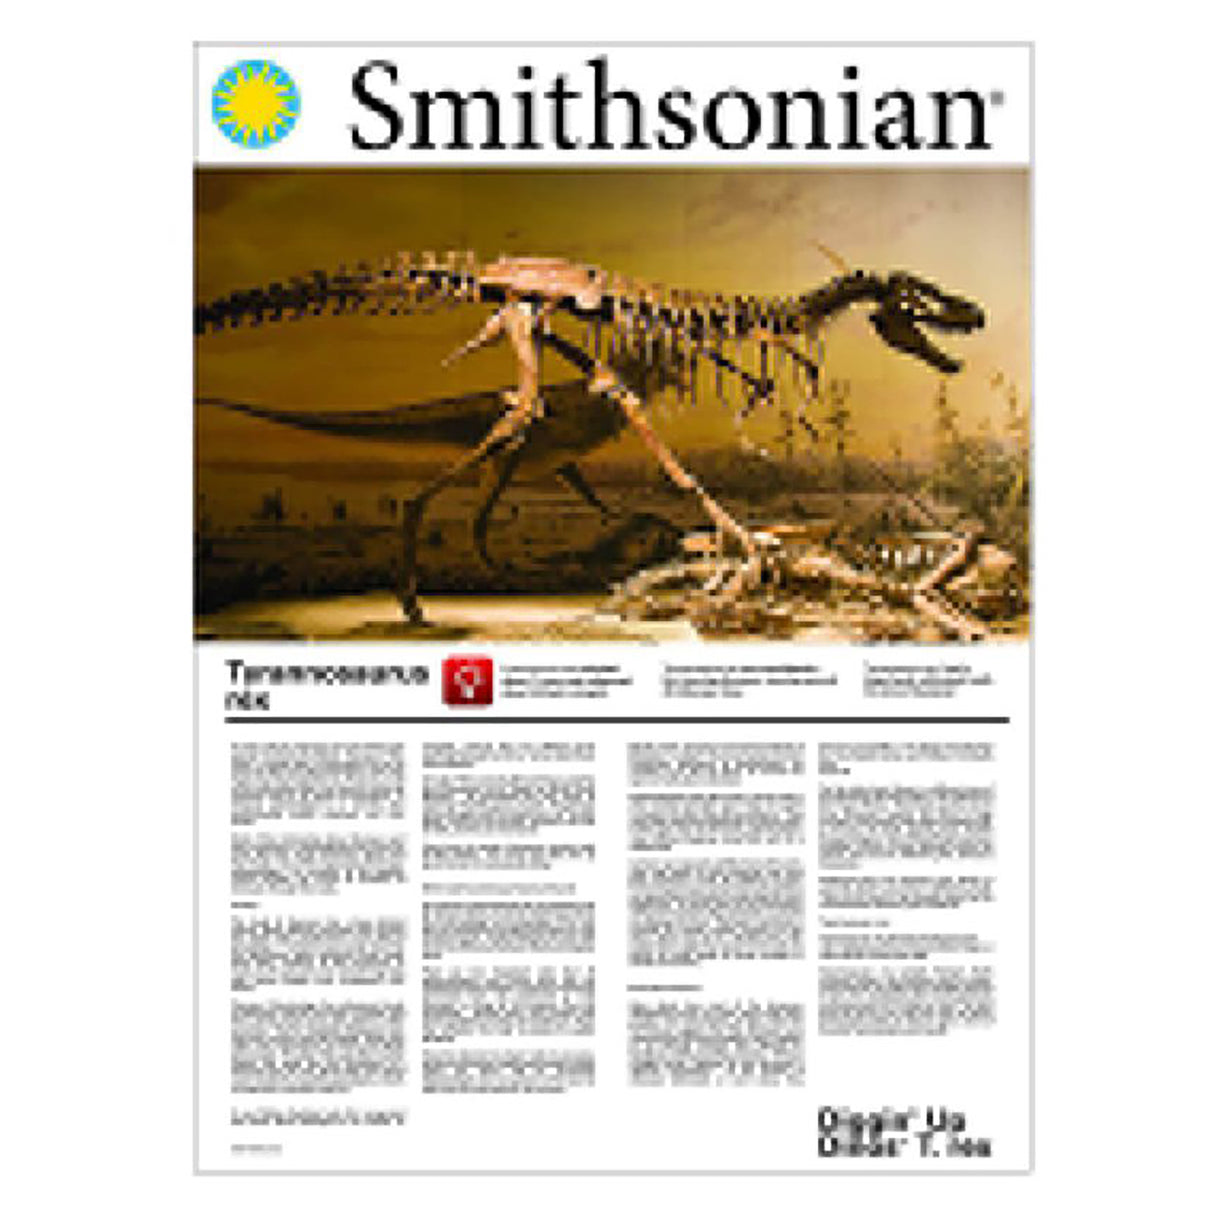 Smithsonian Diggin' Up Dinos T. Rex Excavation Kit